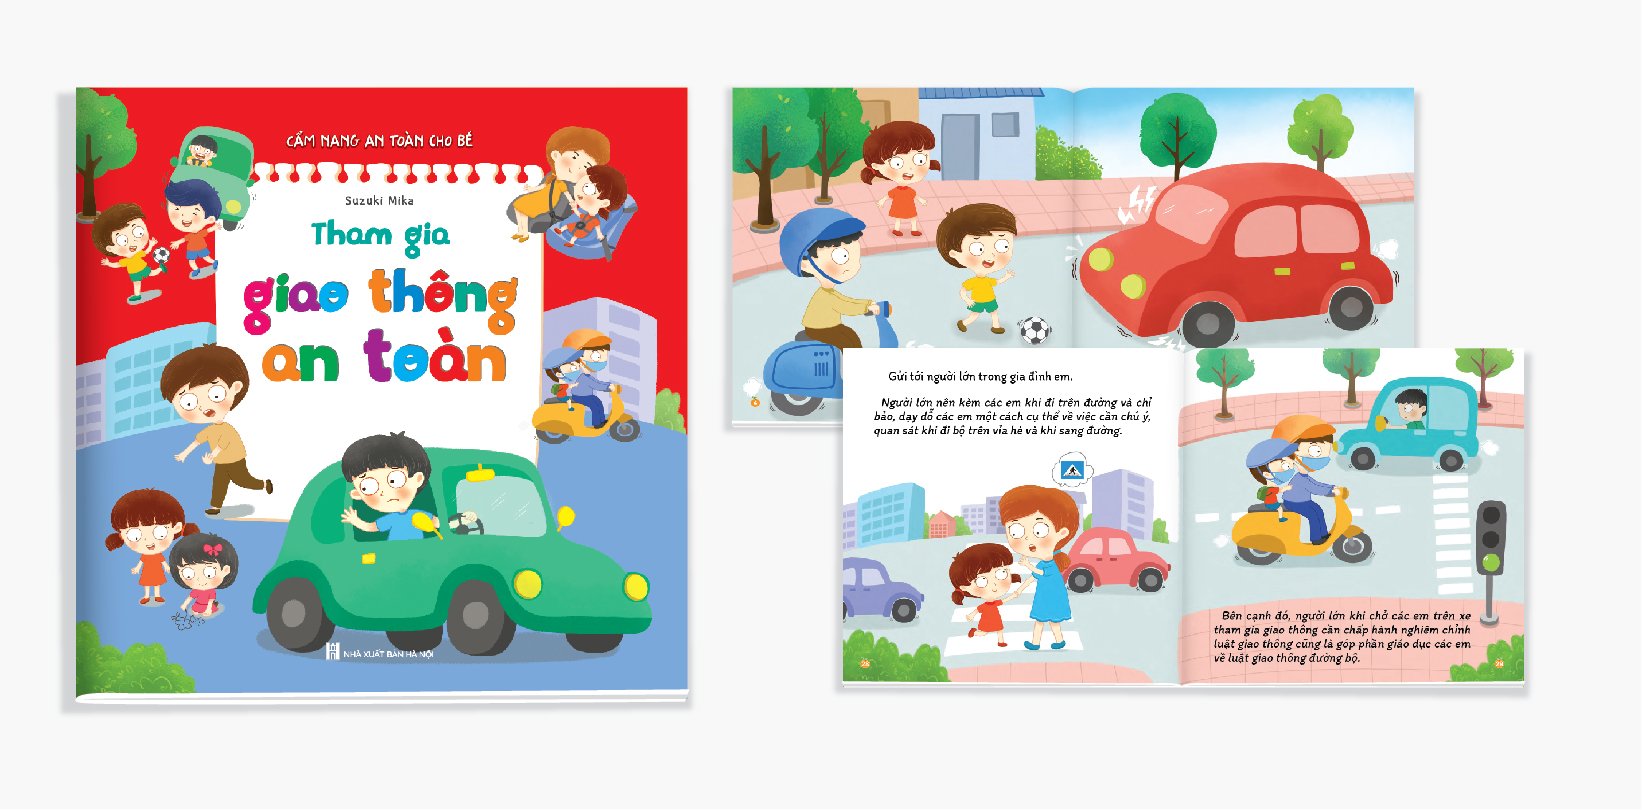 Sách - Kỹ năng thoát hiểm - Bộ sách cẩm nang an toàn cho bé 3 đến 12 tuổi - Trọn bộ 6 cuốn